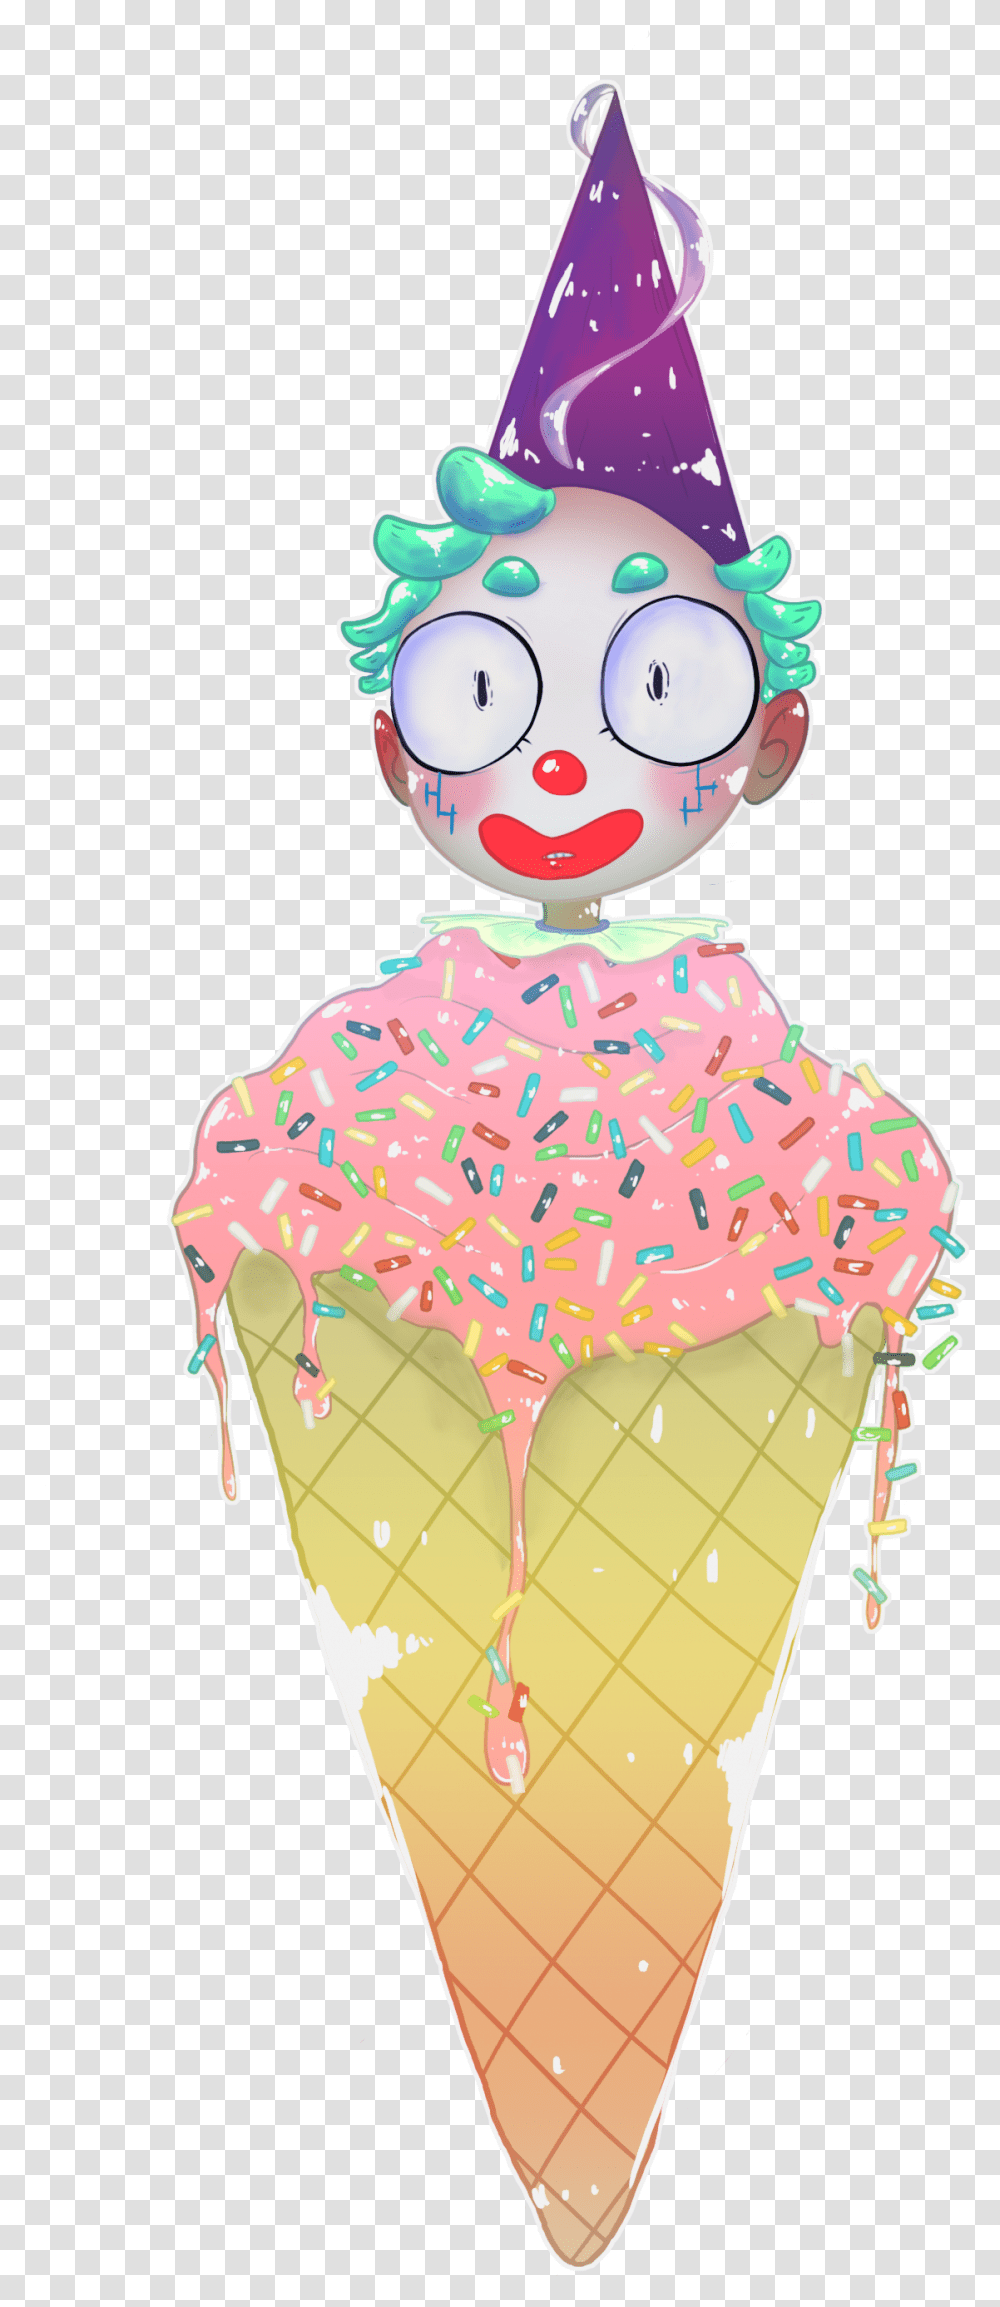 Ice Cream Cone, Dessert, Food, Creme, Cupcake Transparent Png